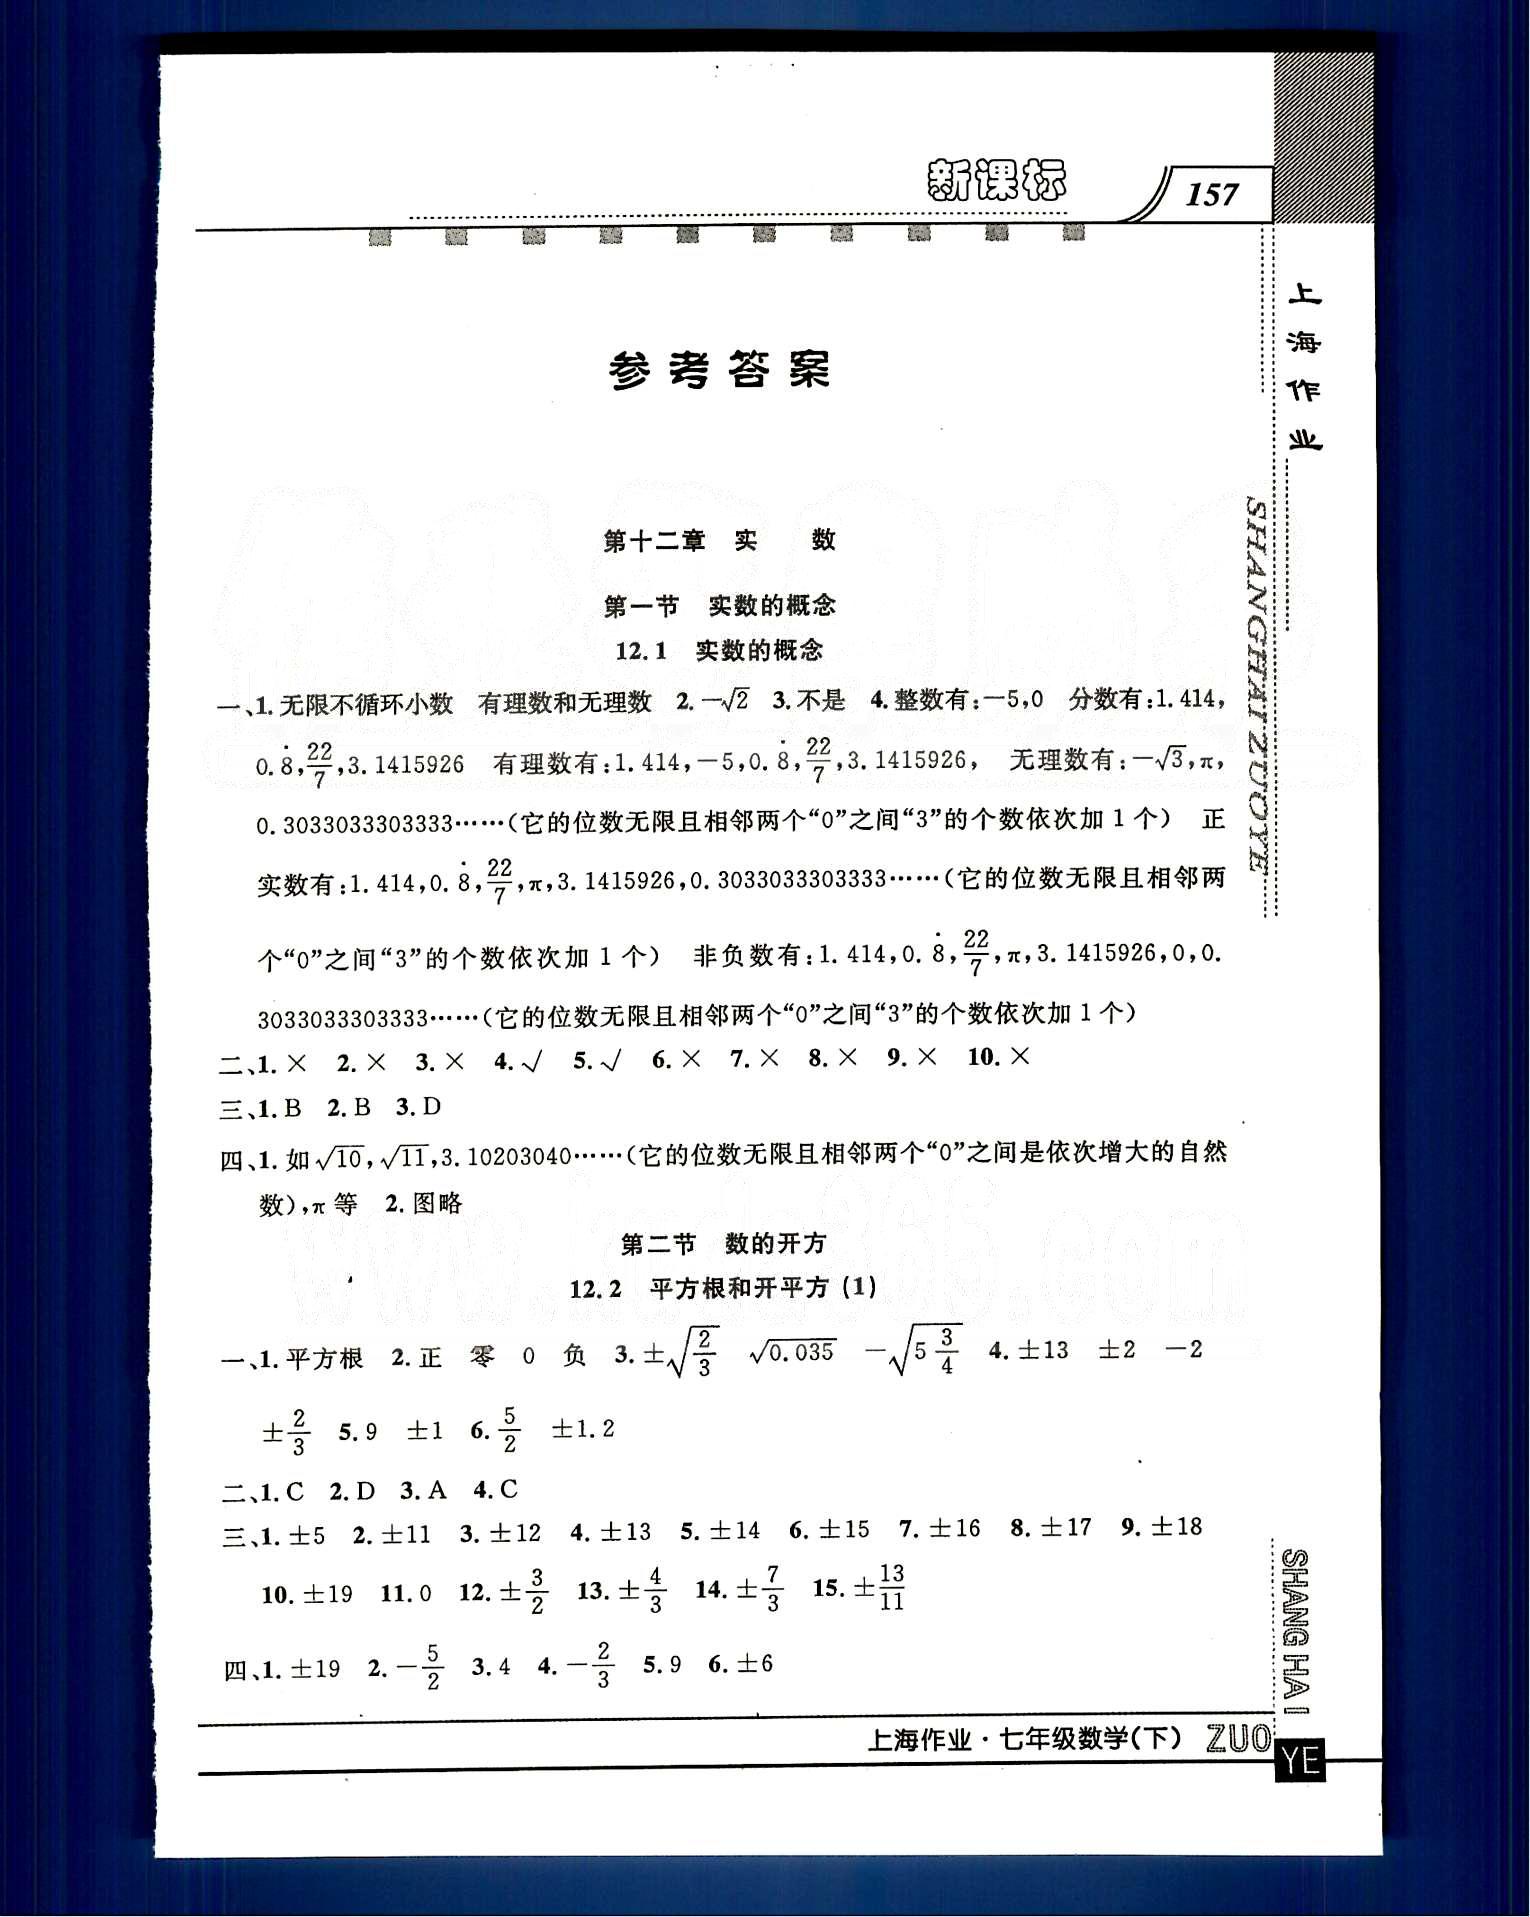 20145 钟书金牌 上海作业七年级下数学上海大学出版社 第十二章-第十三章 [1]